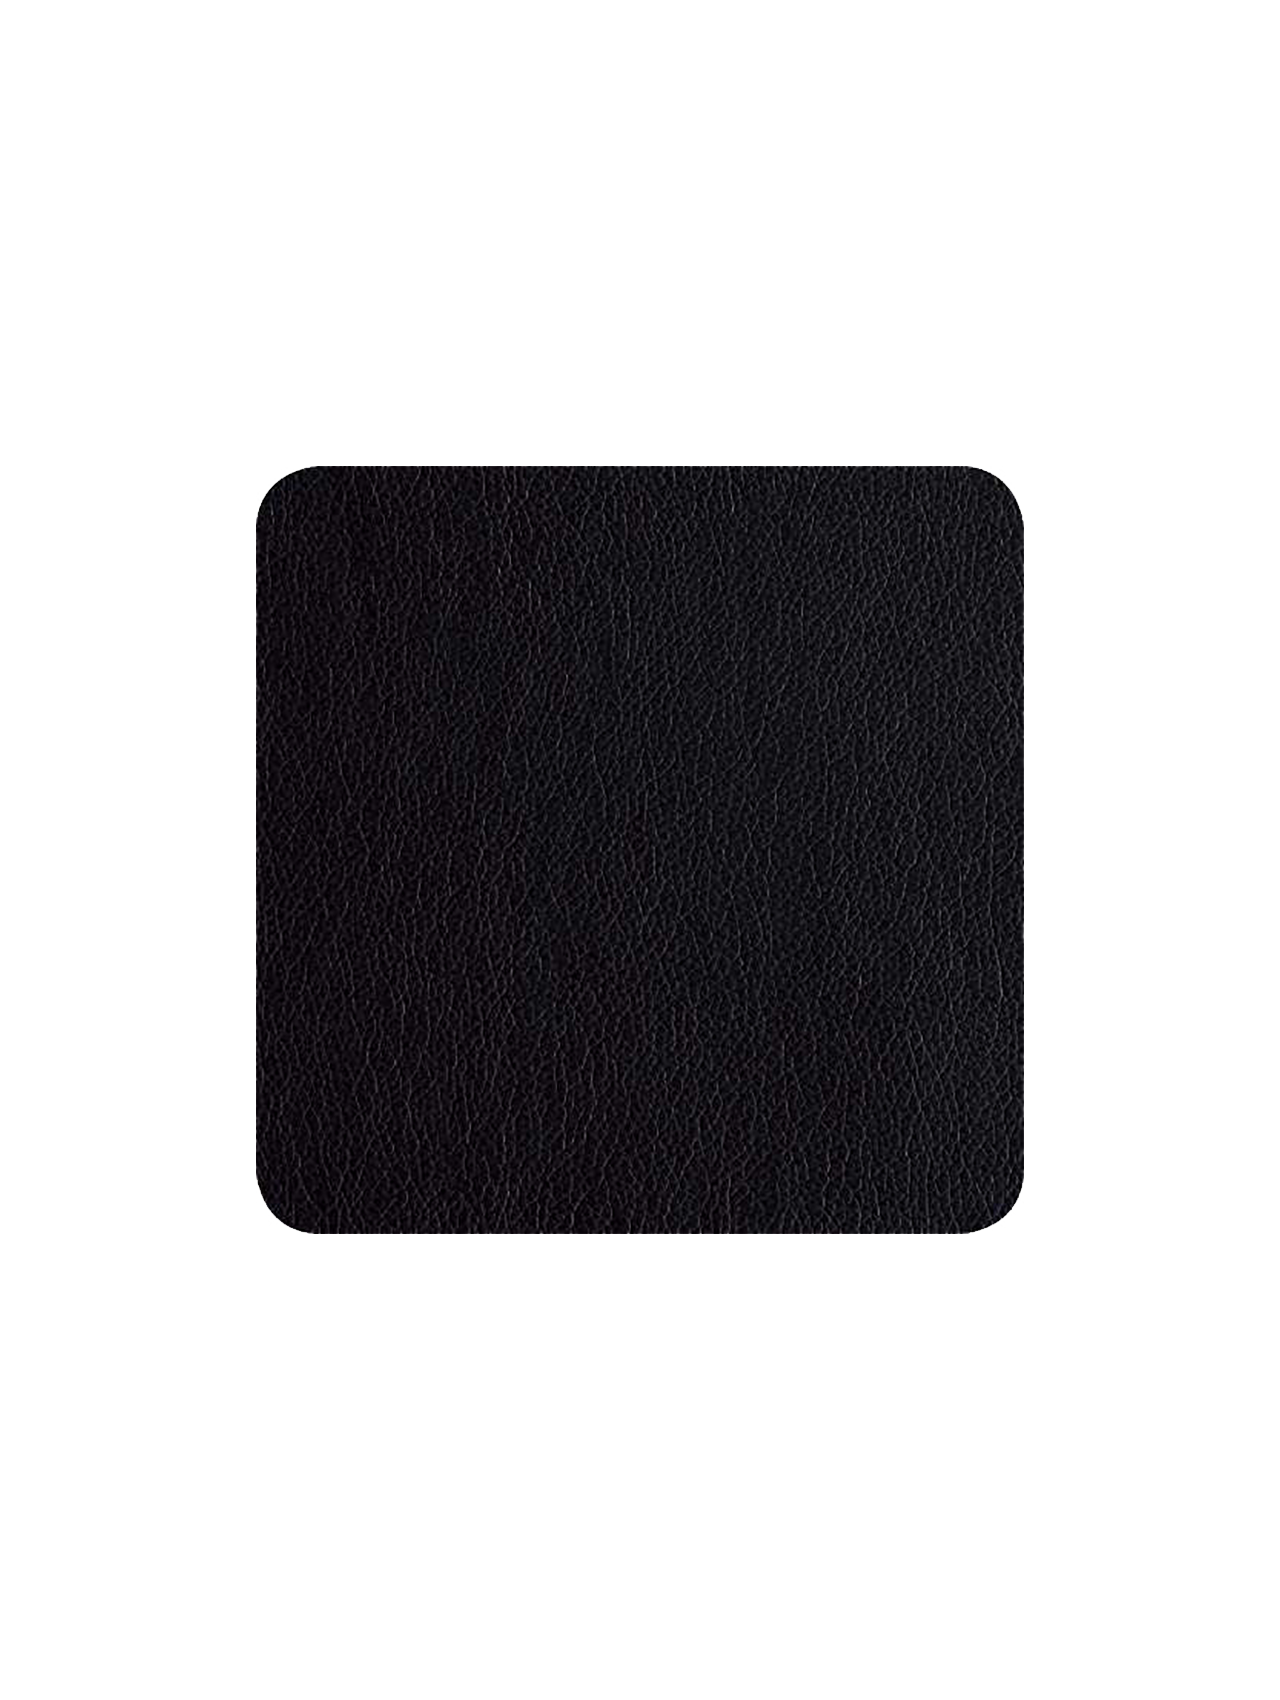 ASA 4er Set Glasuntersetzer schwarz 10 x 10 cm Lederoptik